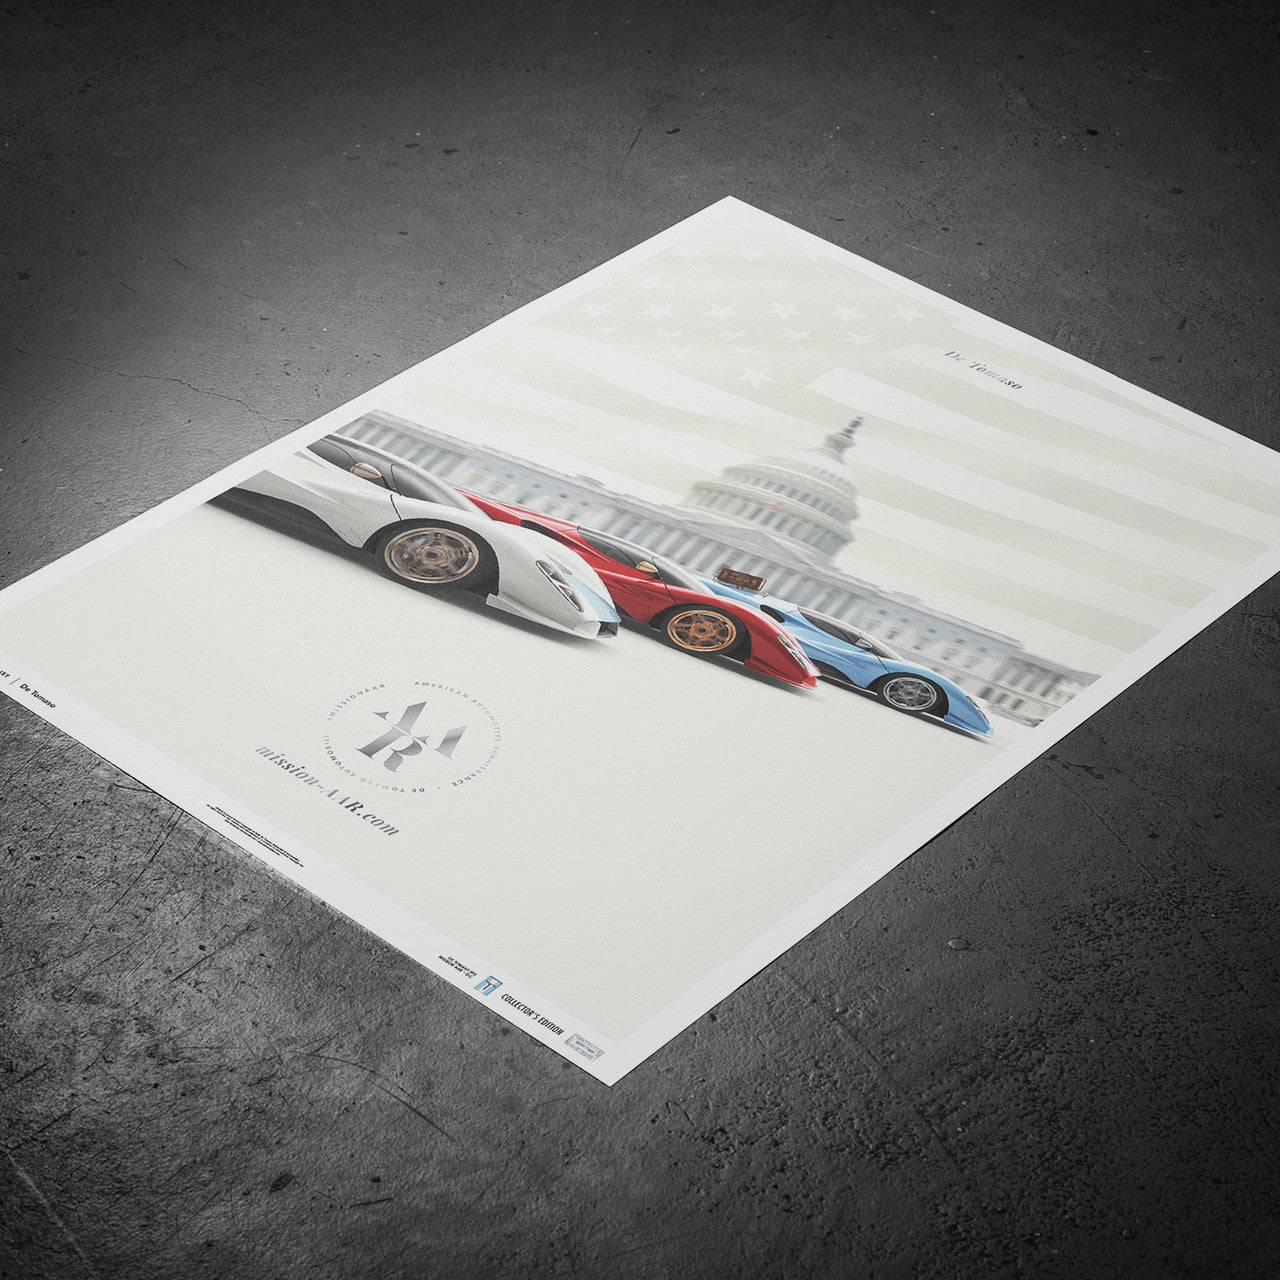 De Tomaso - Mission AAR - American Automotive Renaissance | Collector’s Edition